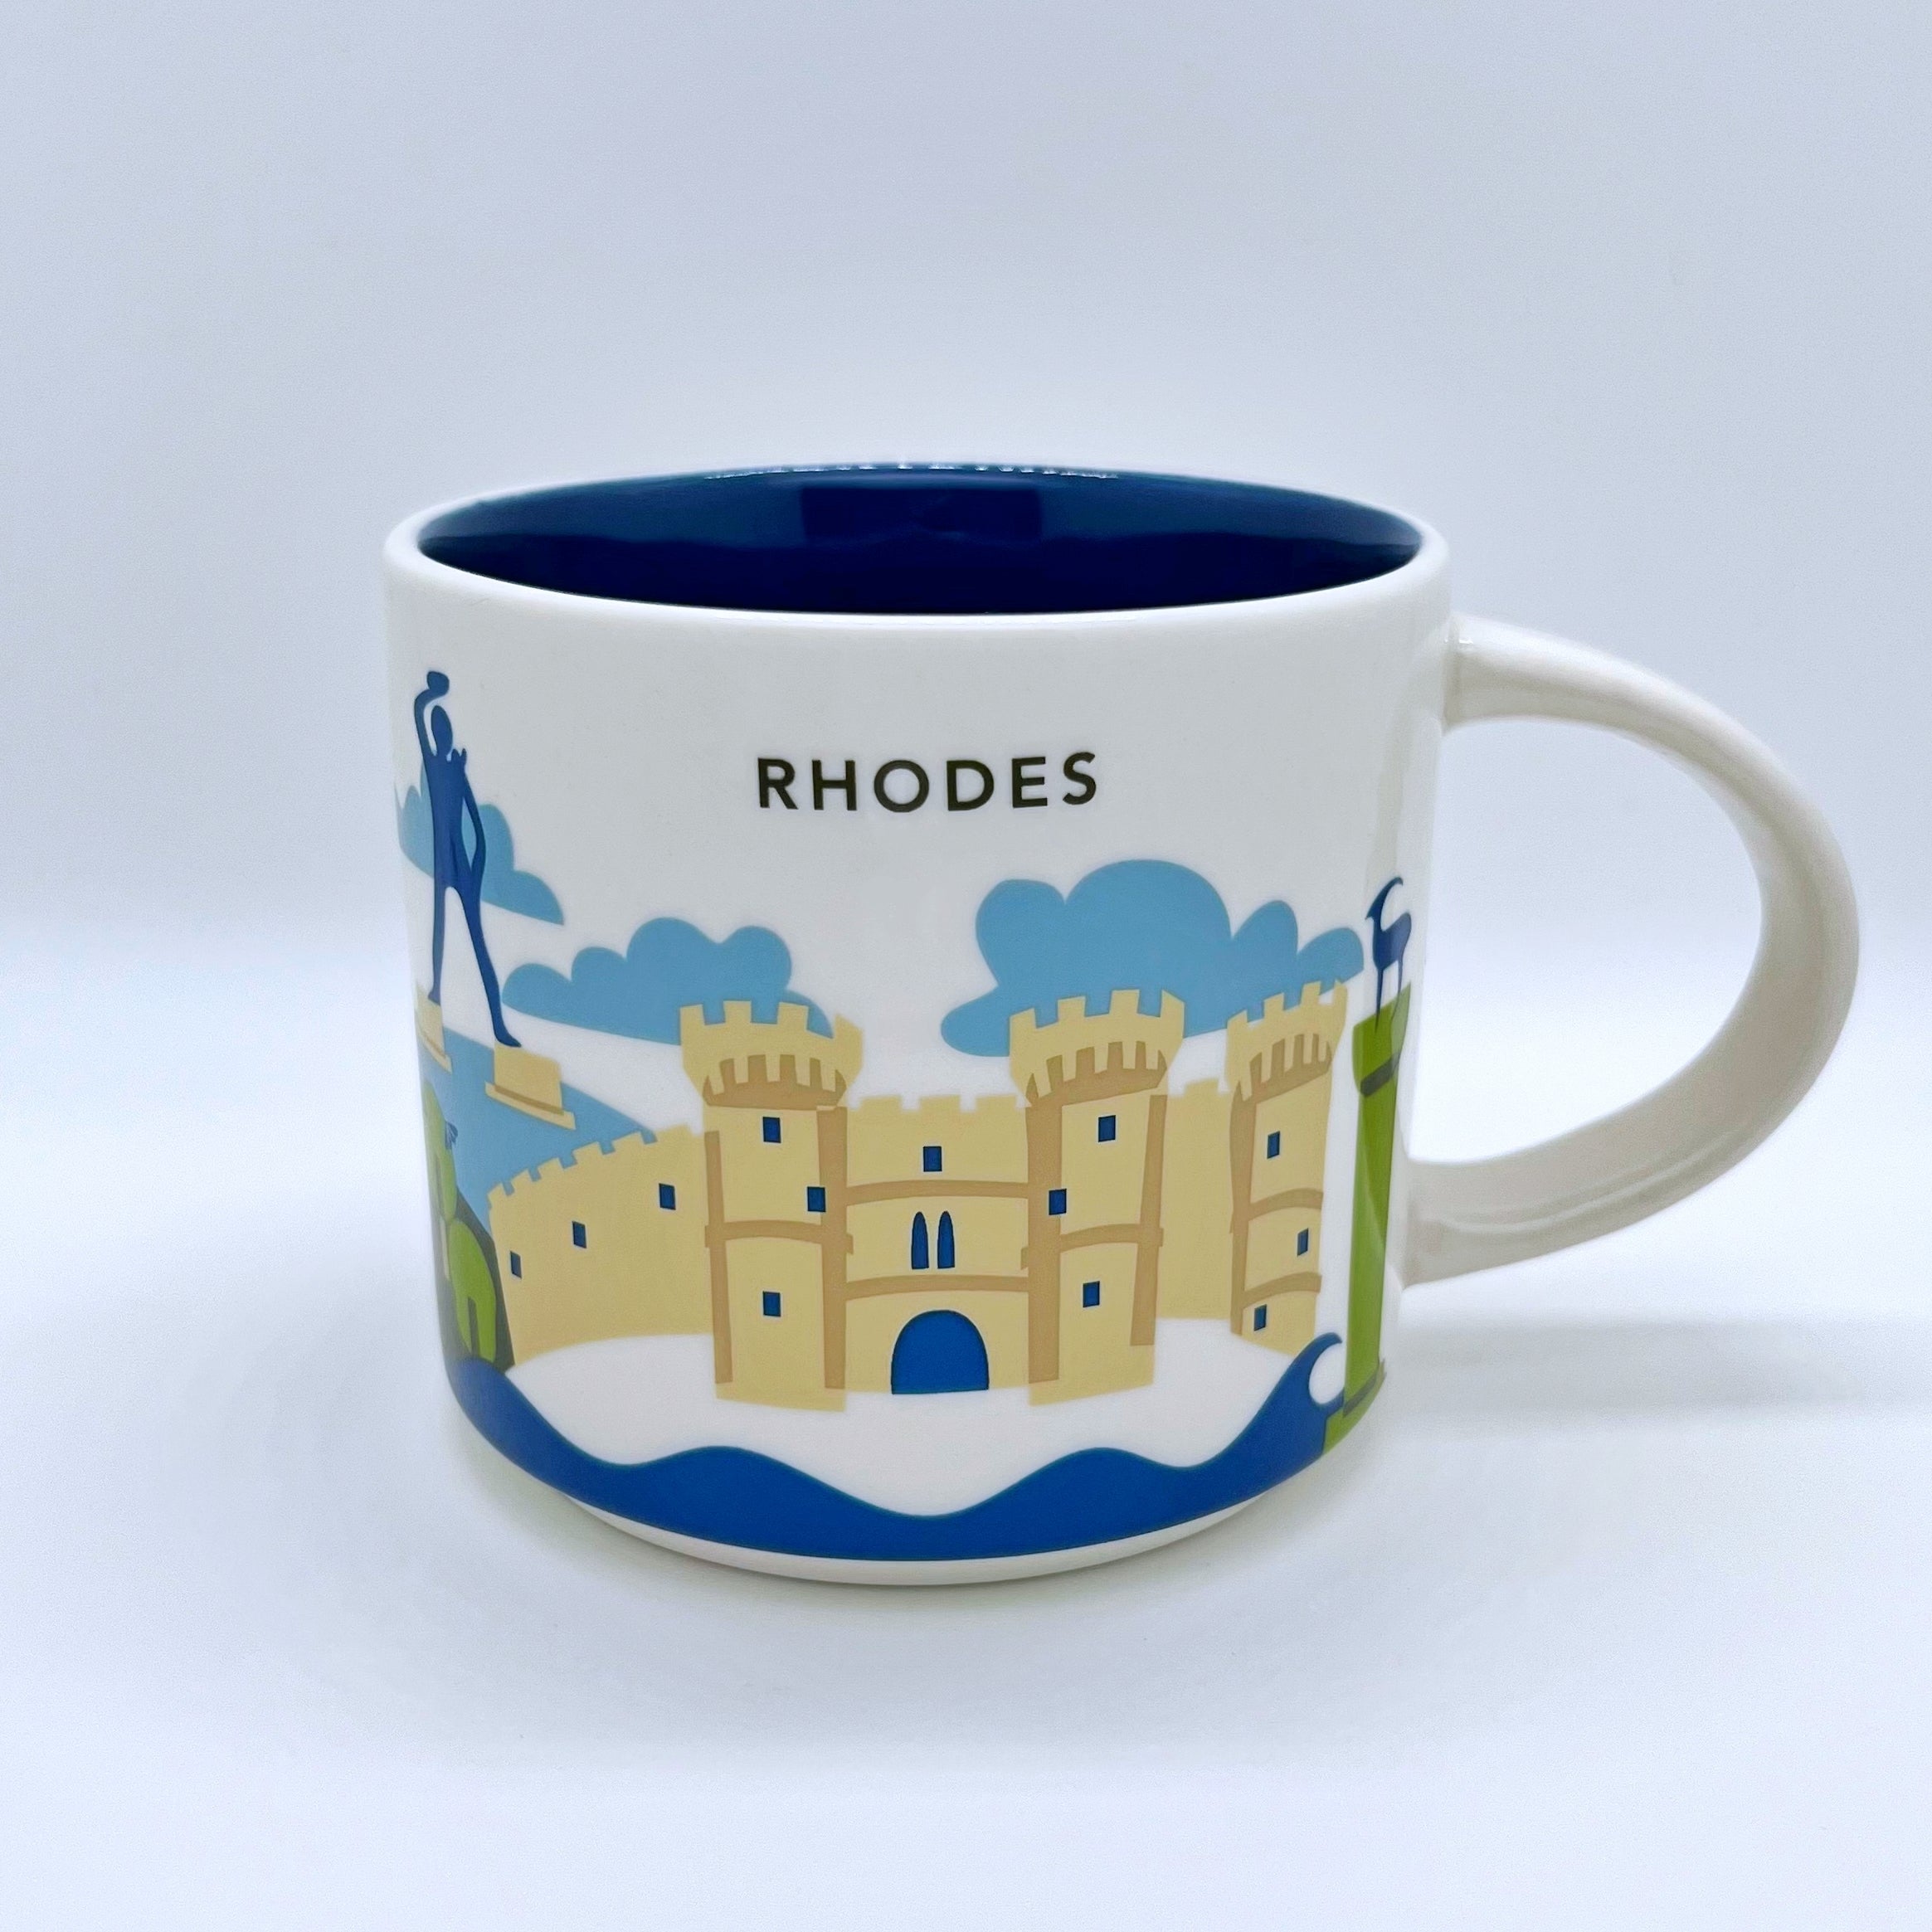 Kaffee Cappuccino oder Tee Tasse von Starbucks mit gemalten Bildern von der Insel Rhodos